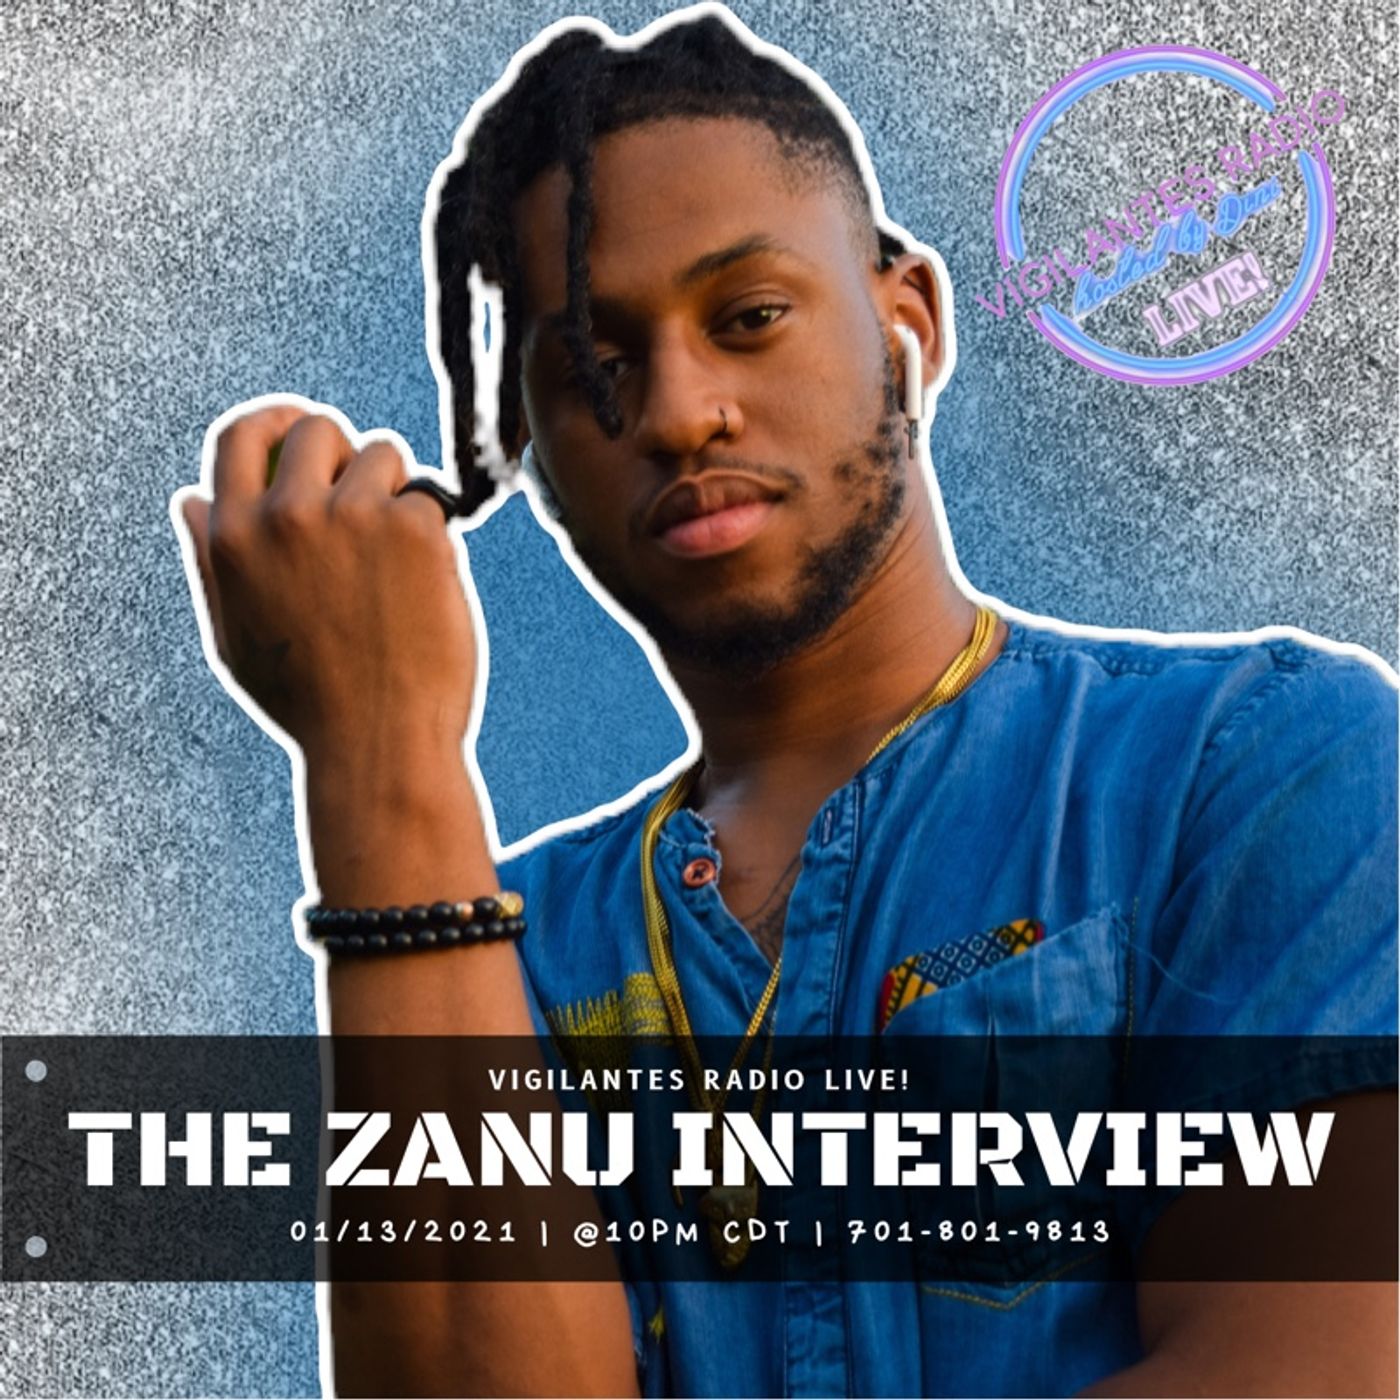 The Zanu Interview. Image